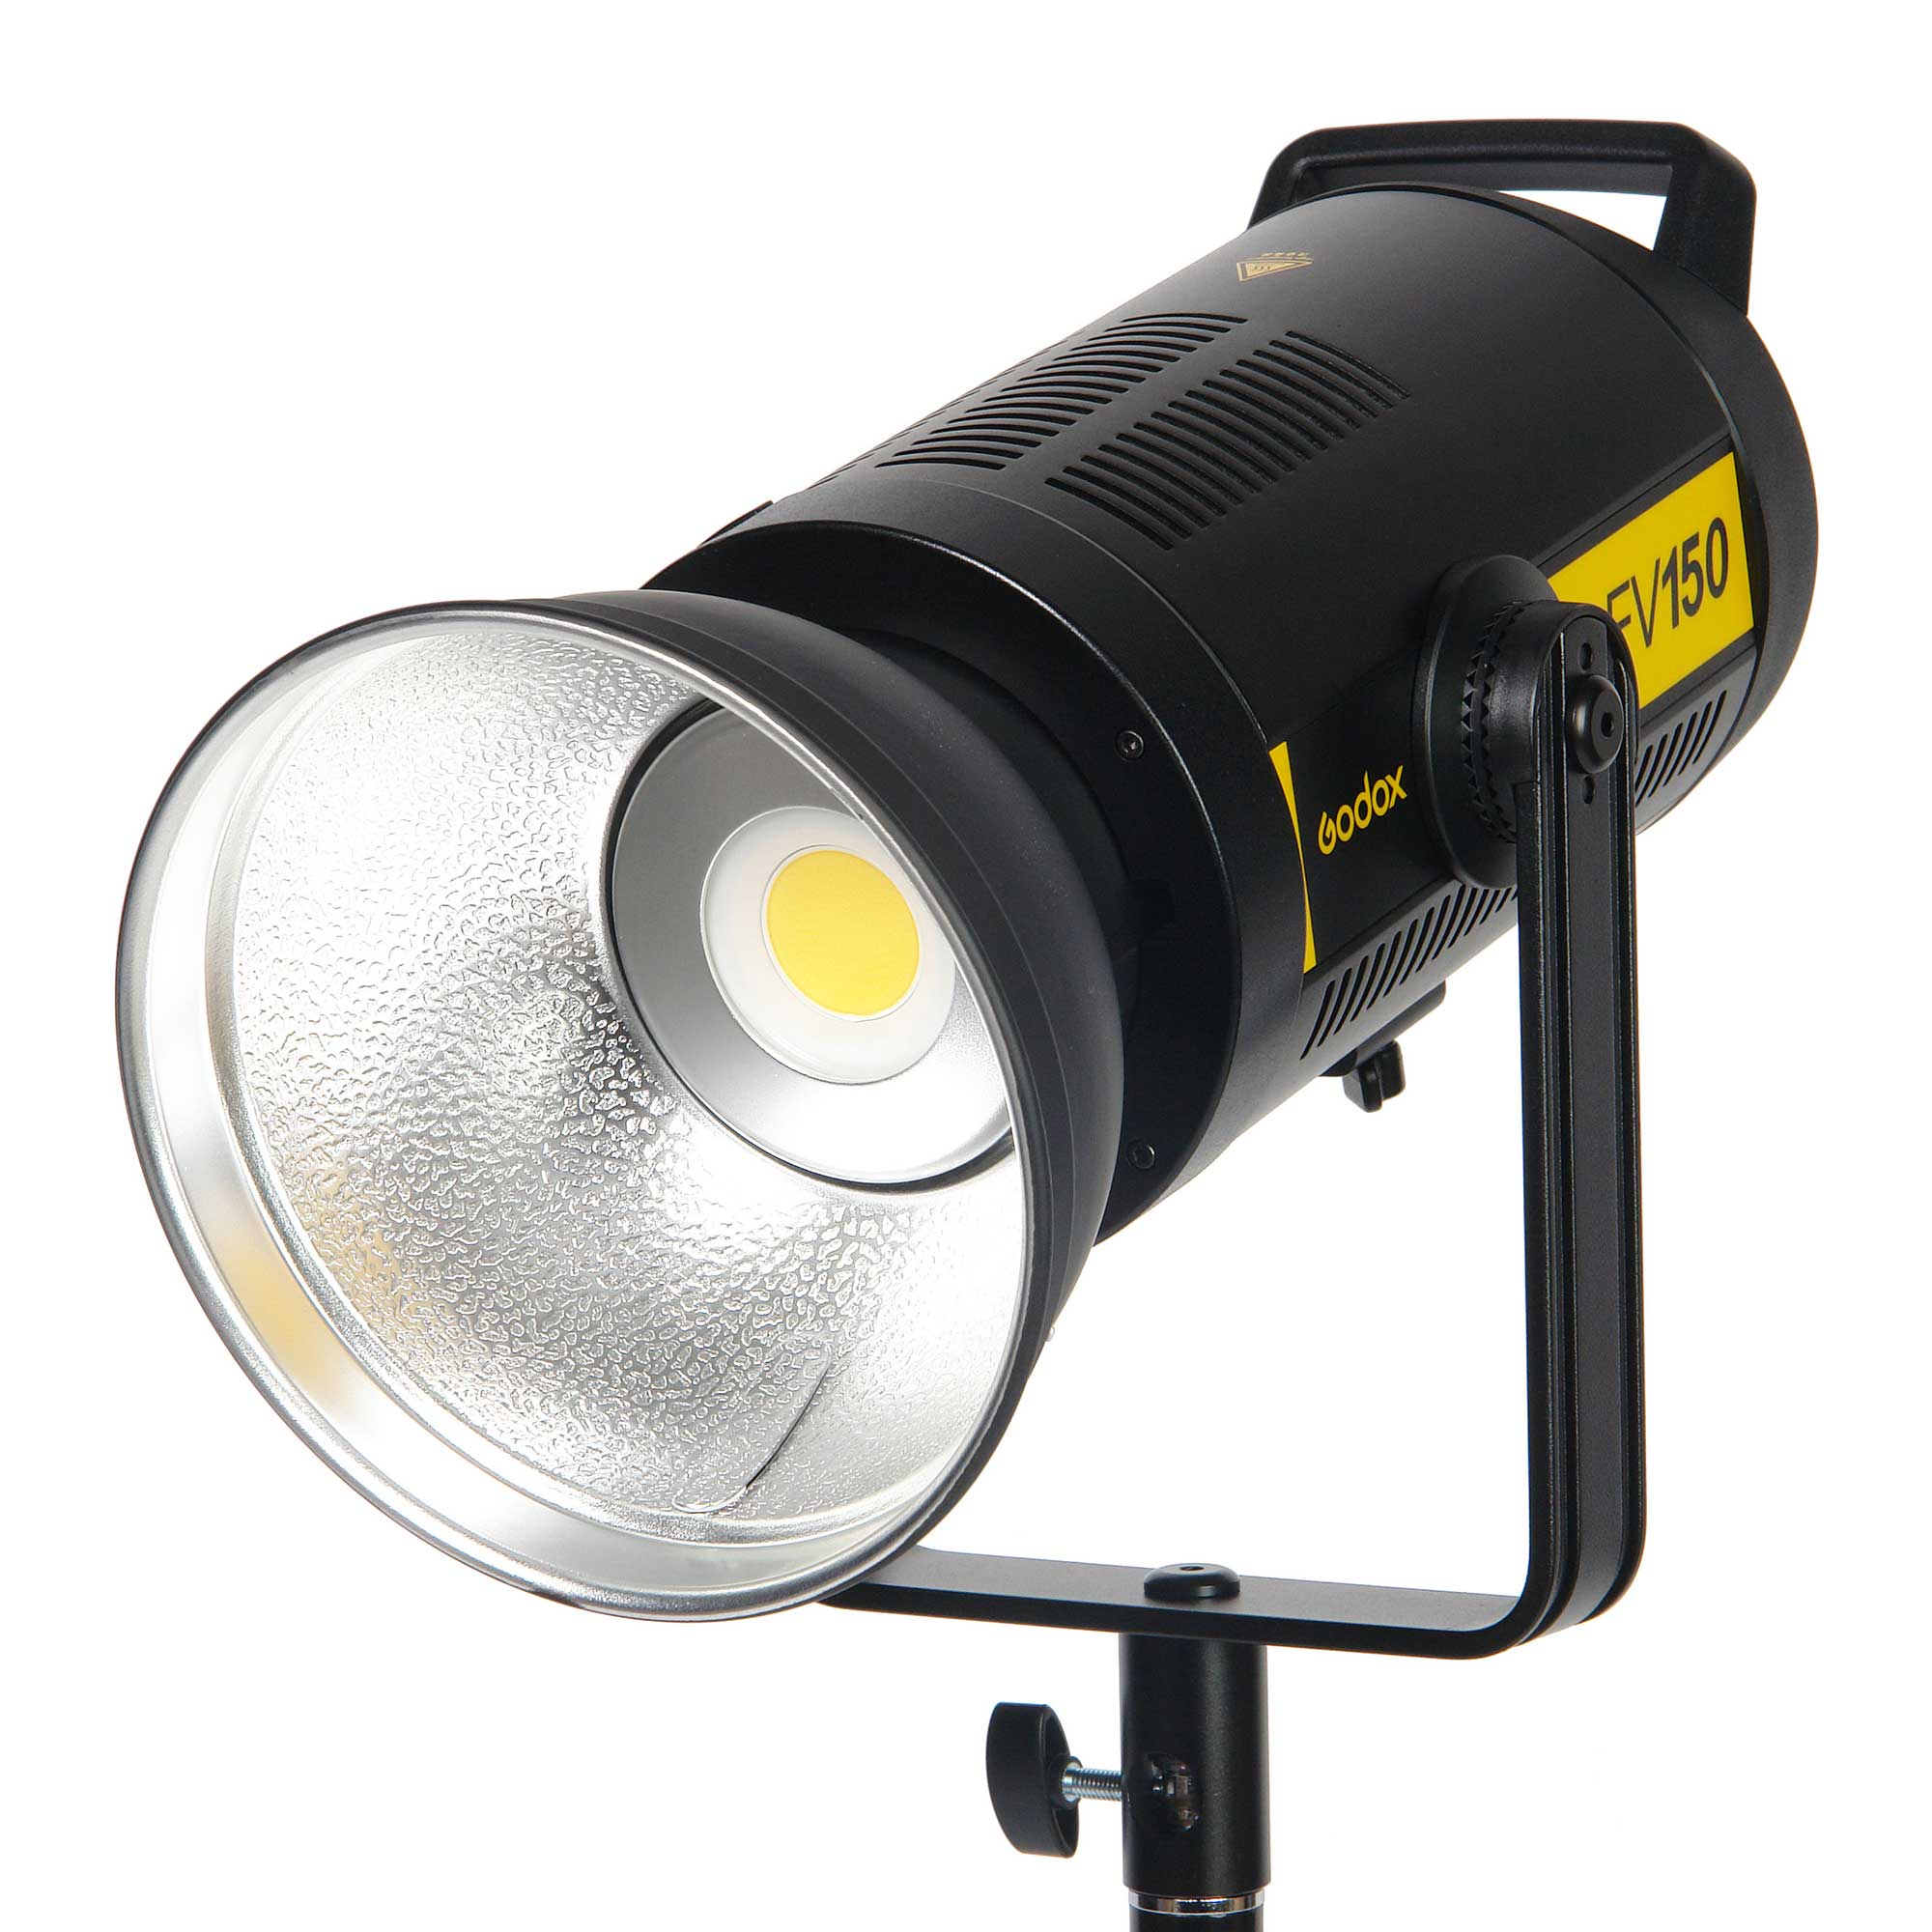 Осветитель светодиодный Godox FV150 с функцией вспышки (без пульта) цена и фото